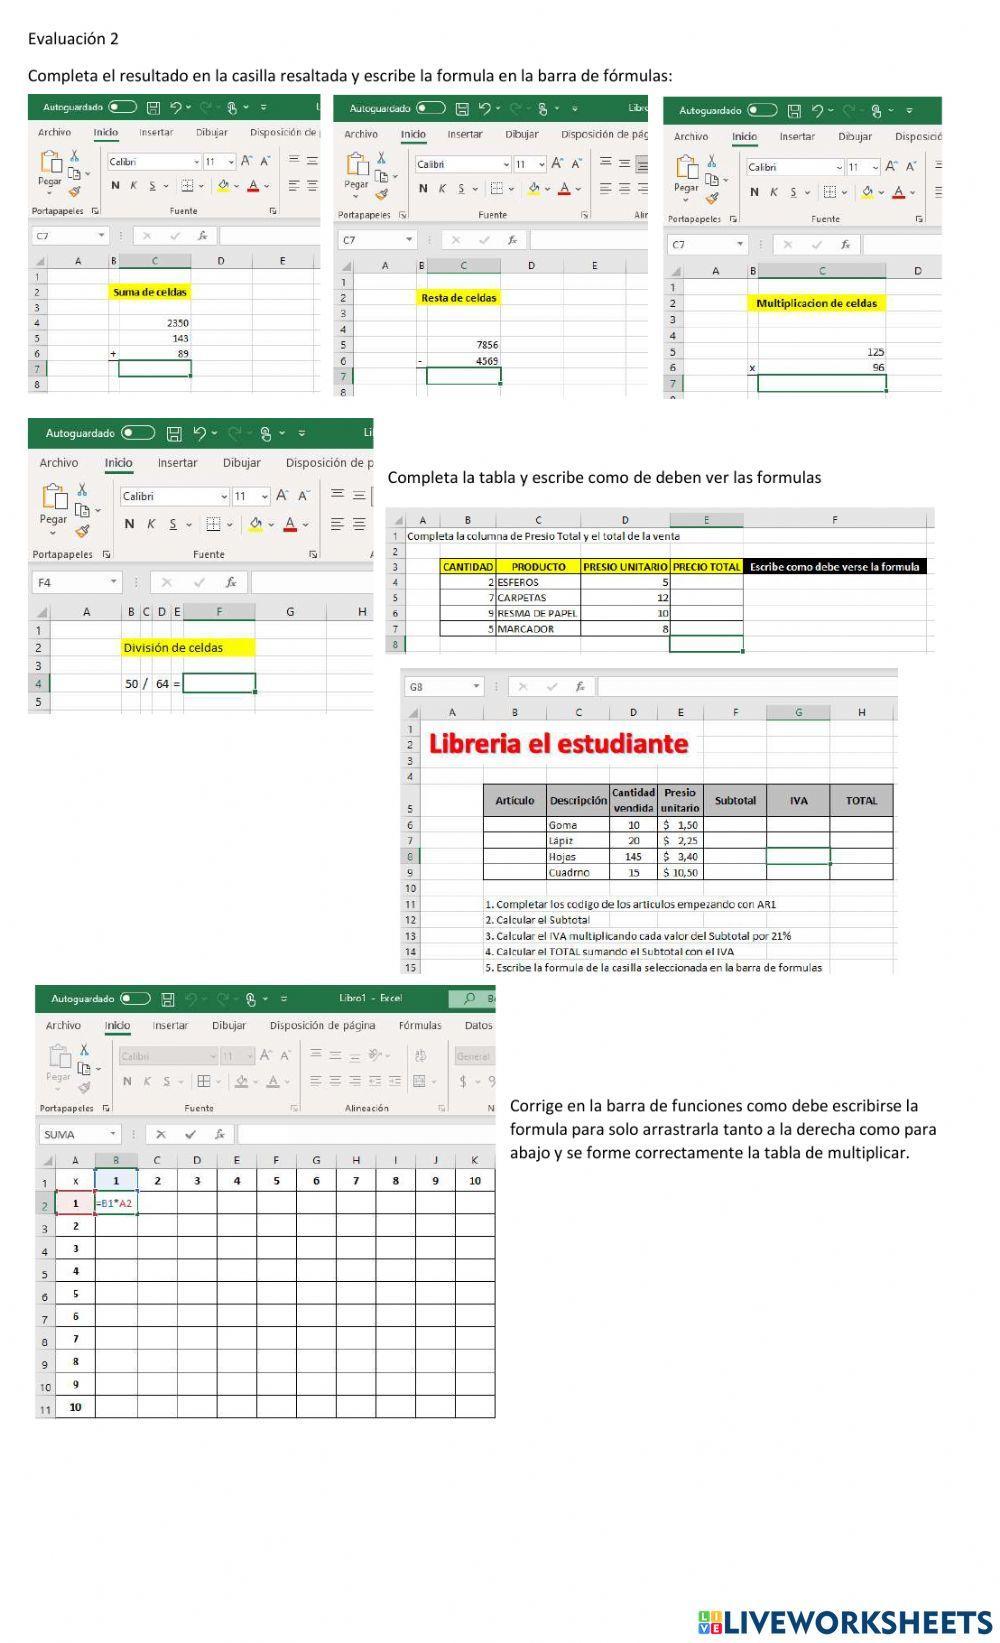 Operaciones básicas en Excel